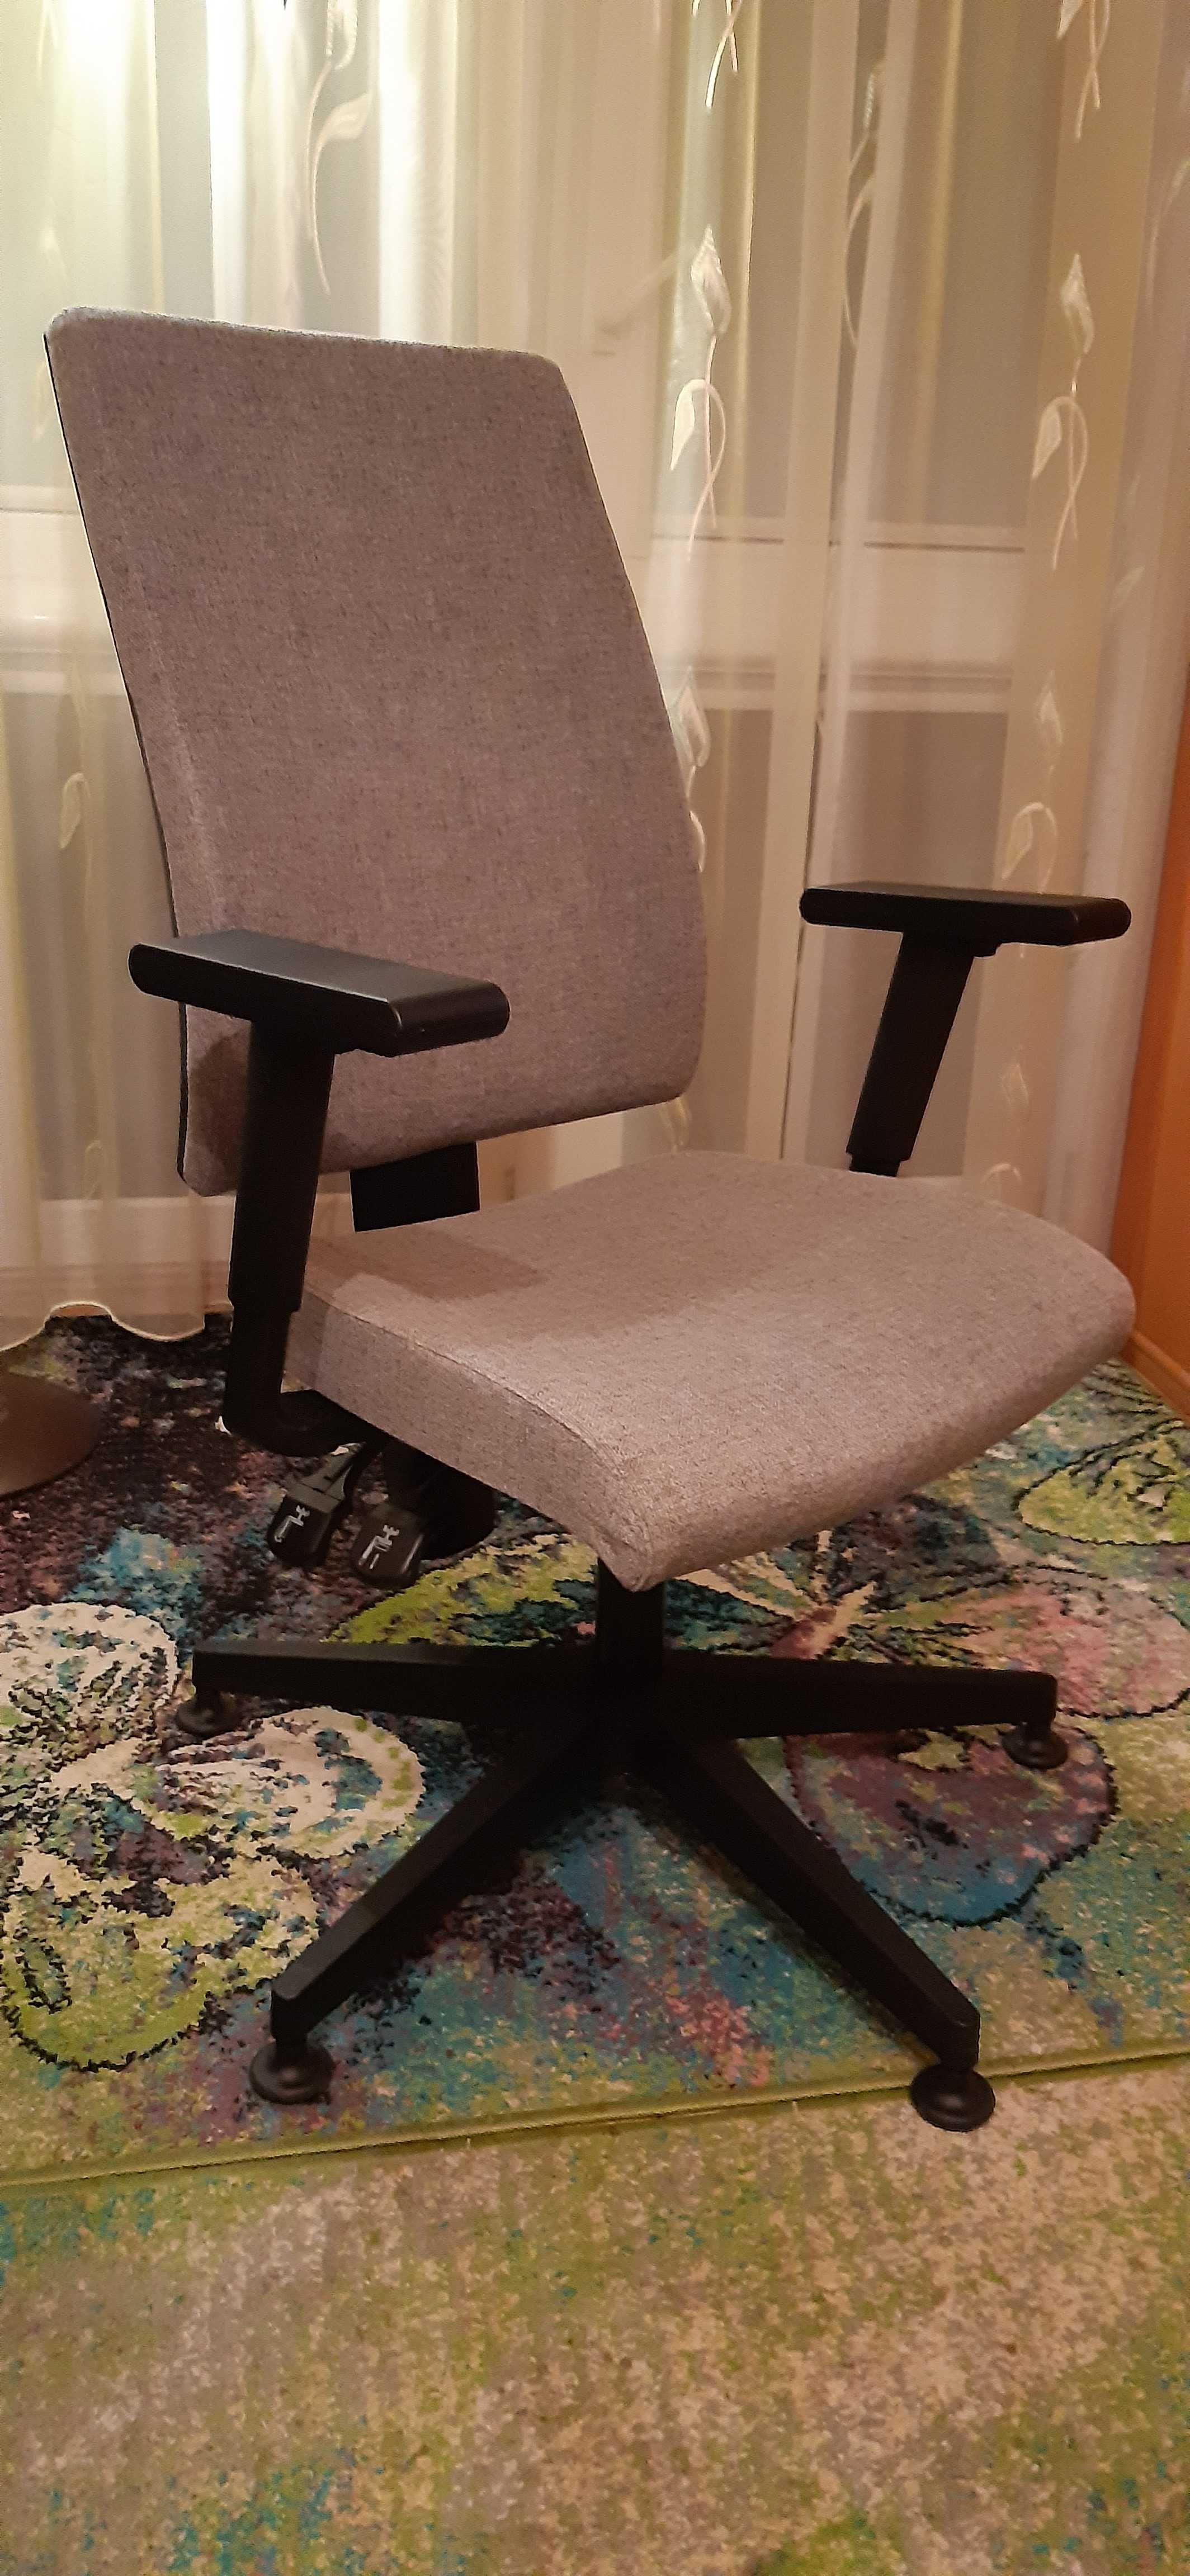 Krzesło obrotowe_doceniane przez osoby z chorobami kręgosłupa